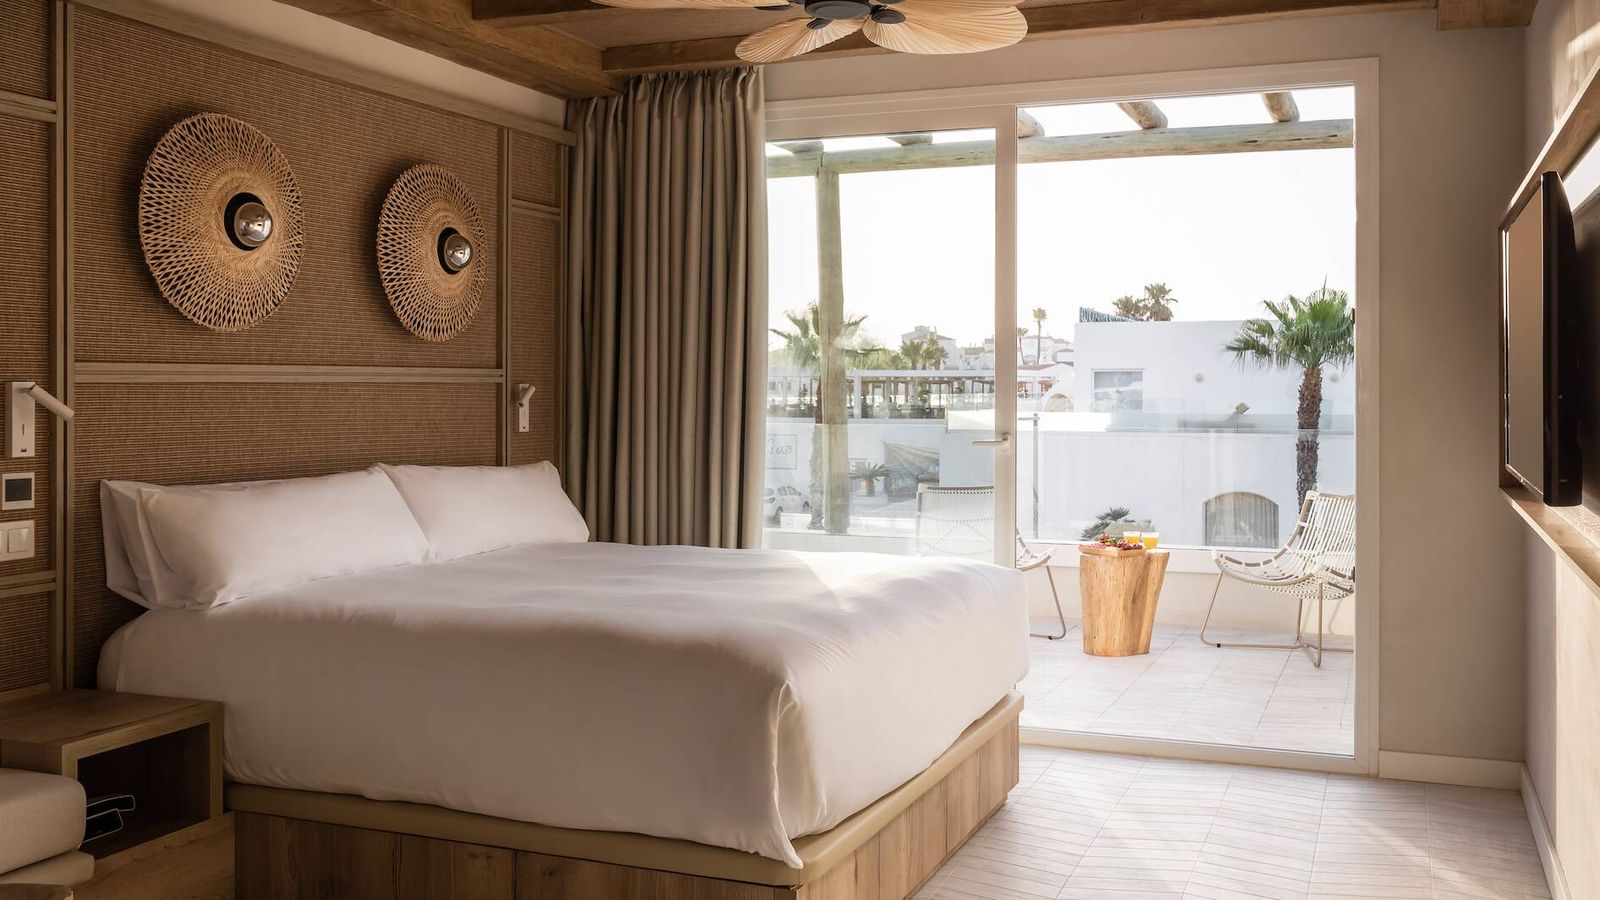 El concepto de Lago Resort Menorca es abierto, integrándose en el pueblo y con cuatro tipos diferentes de alojamiento. (Cortesía)